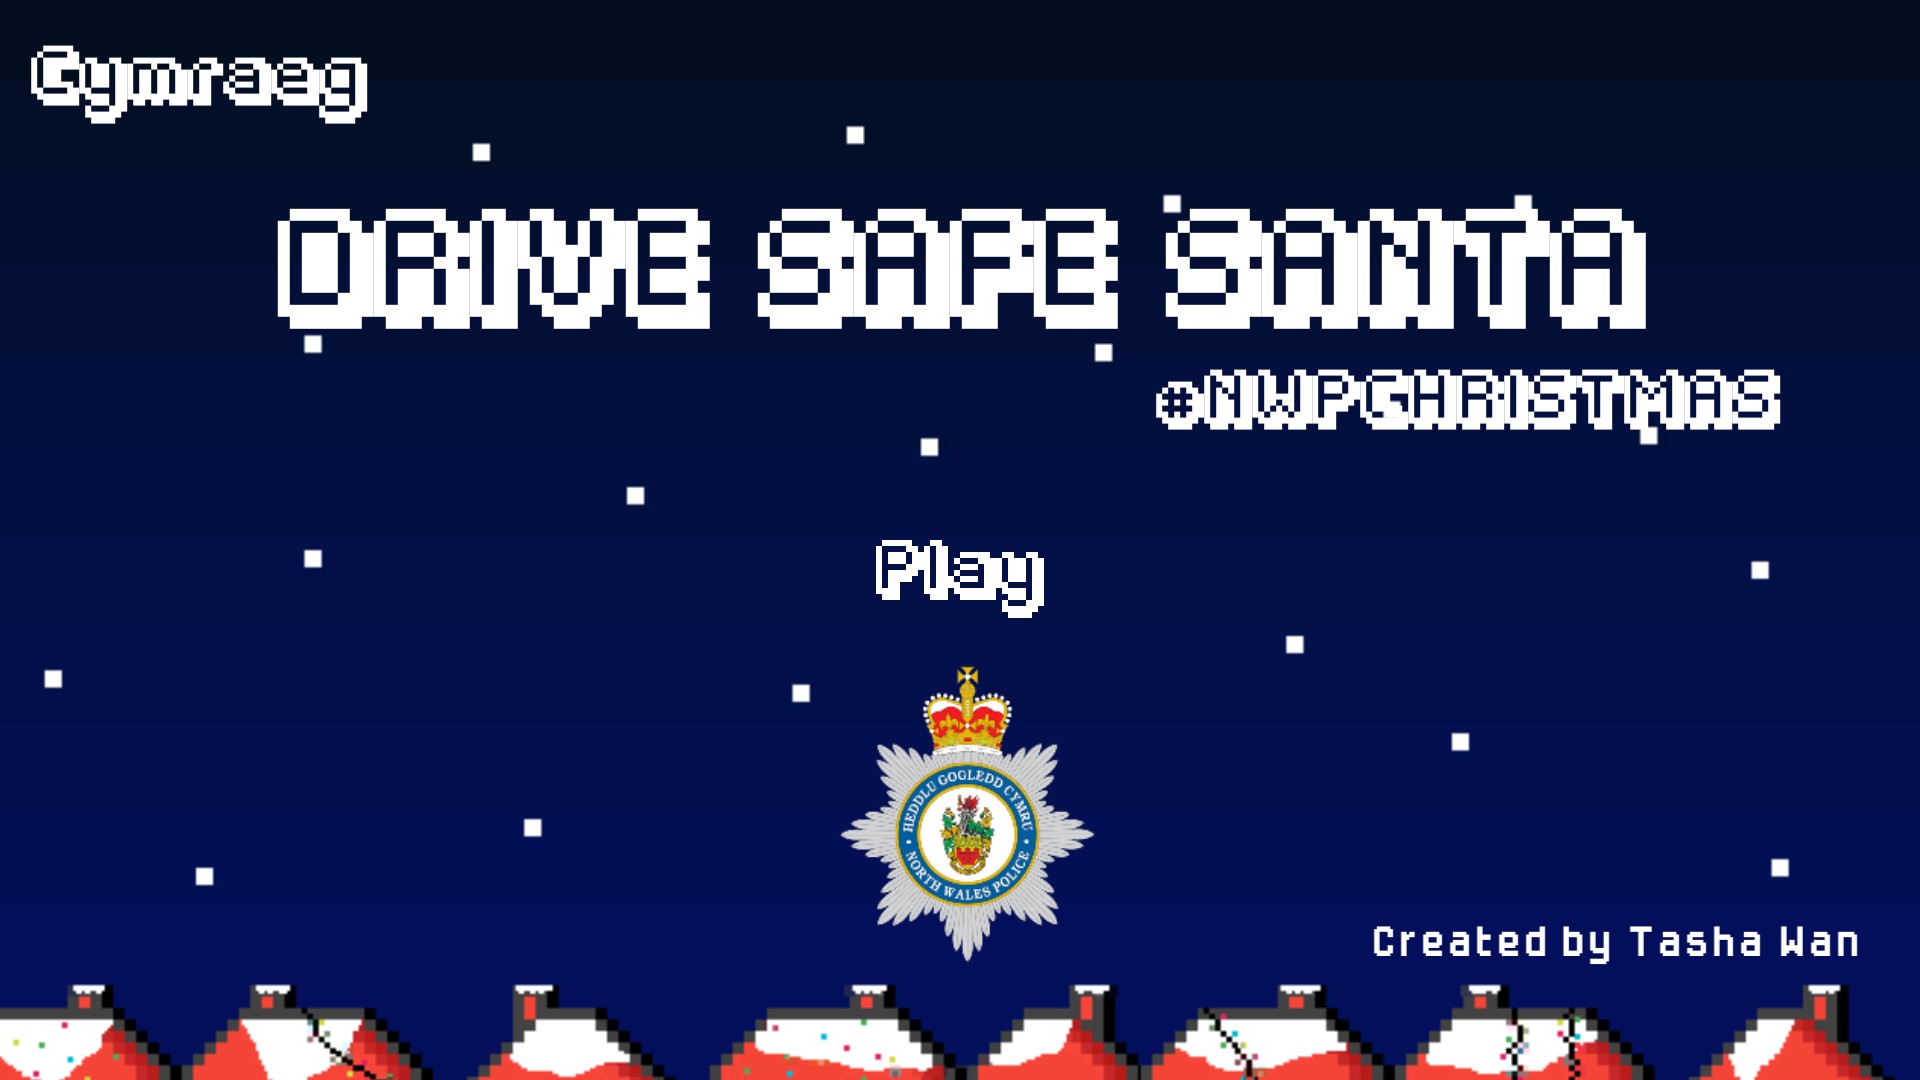 ‘Drive Safe Santa’ start screen